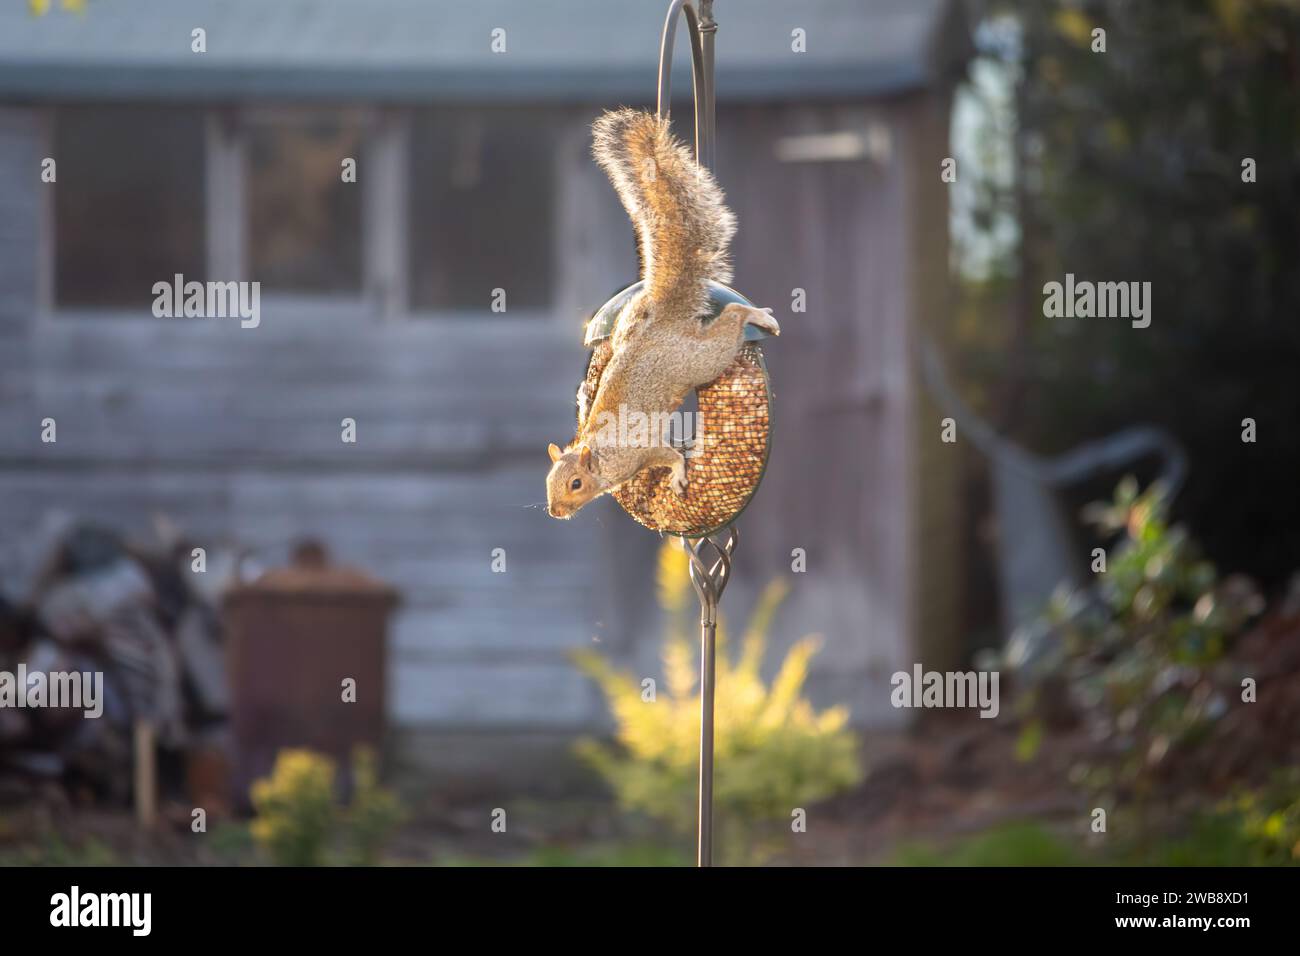 A squirrel hanging onto a bird feeder in an English garden Stock Photo